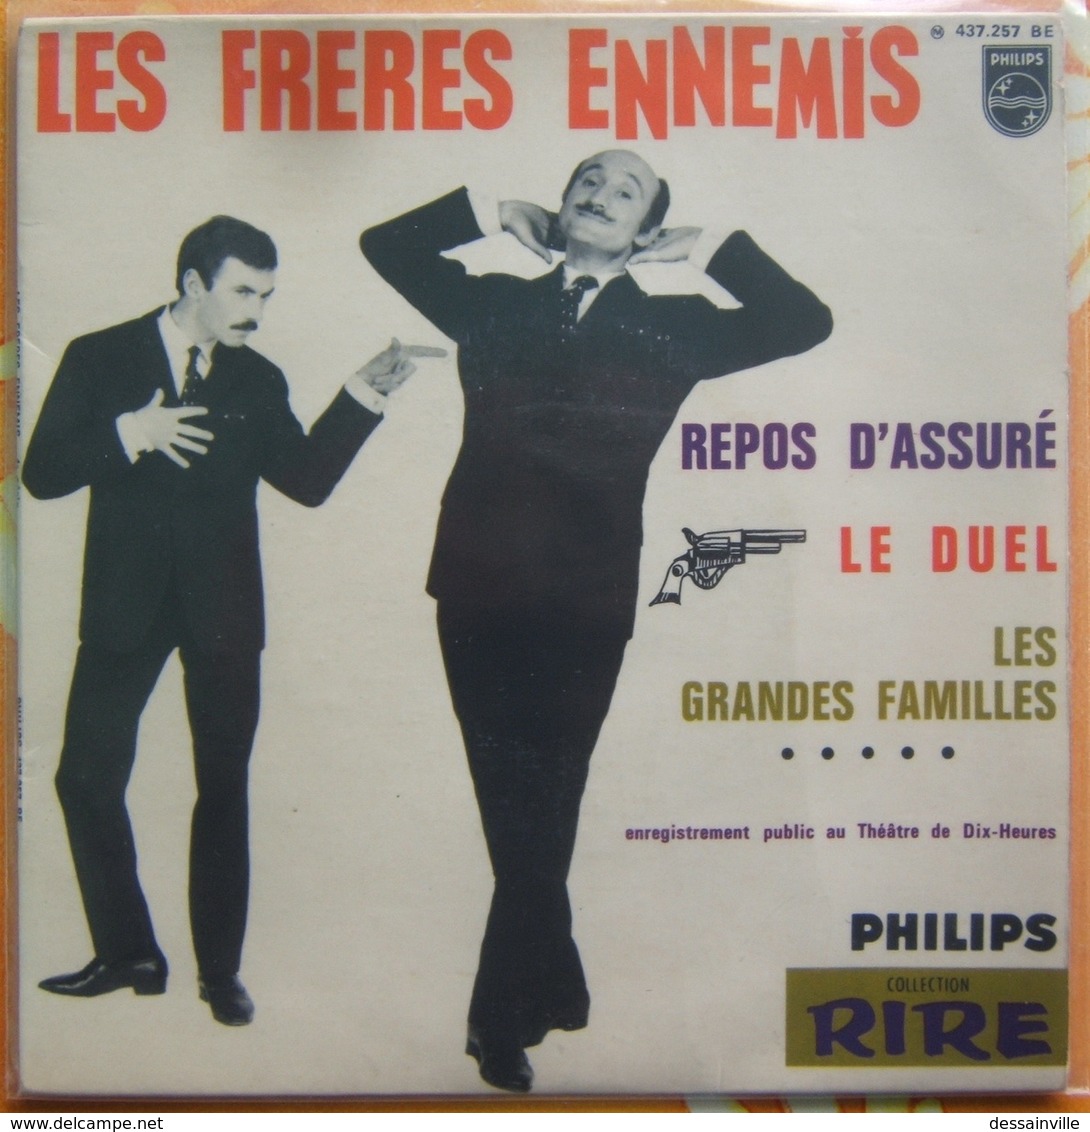 LES FRERES ENNEMIS - 45 Tours PHILIPS 437 257 BE - Enregistrement Public Théâtre De Dix-heures - Humor, Cabaret